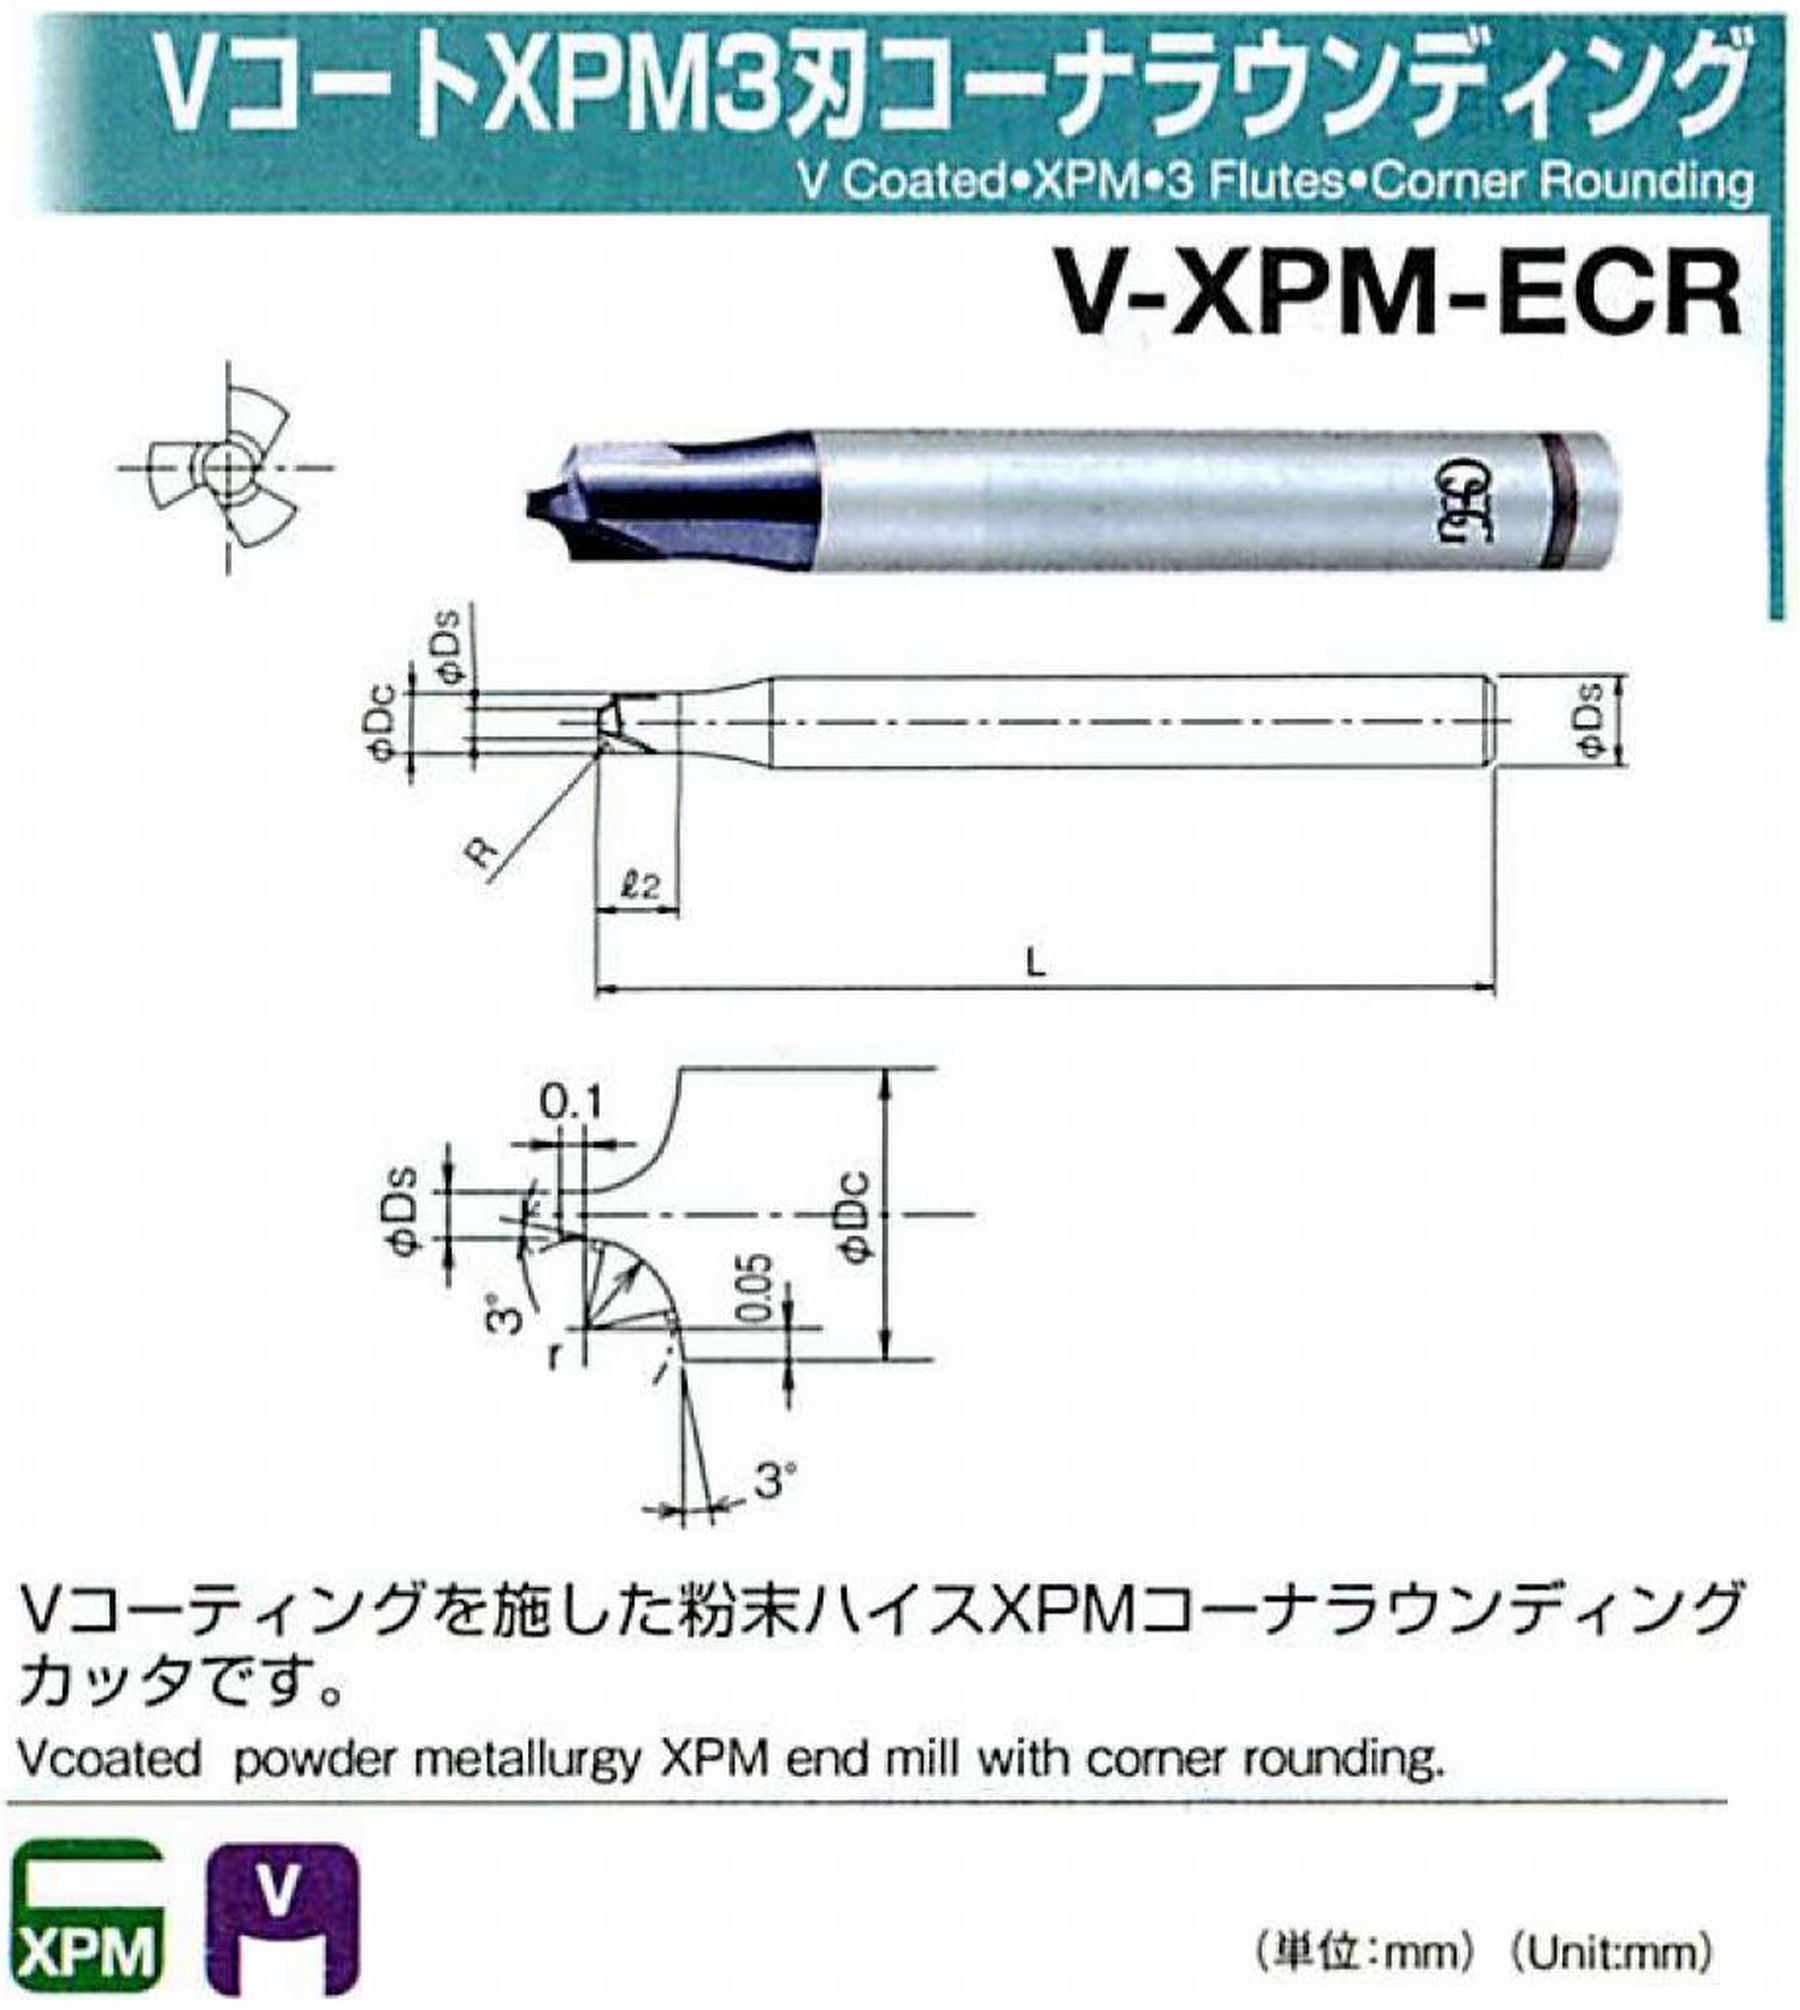 オーエスジー/OSG VコートXPM3刃 コーナラウンディング V-XPM-ECR 先端角×コーナ半径2×R3 外径8 全長60 シャンク径8mm 首下長-